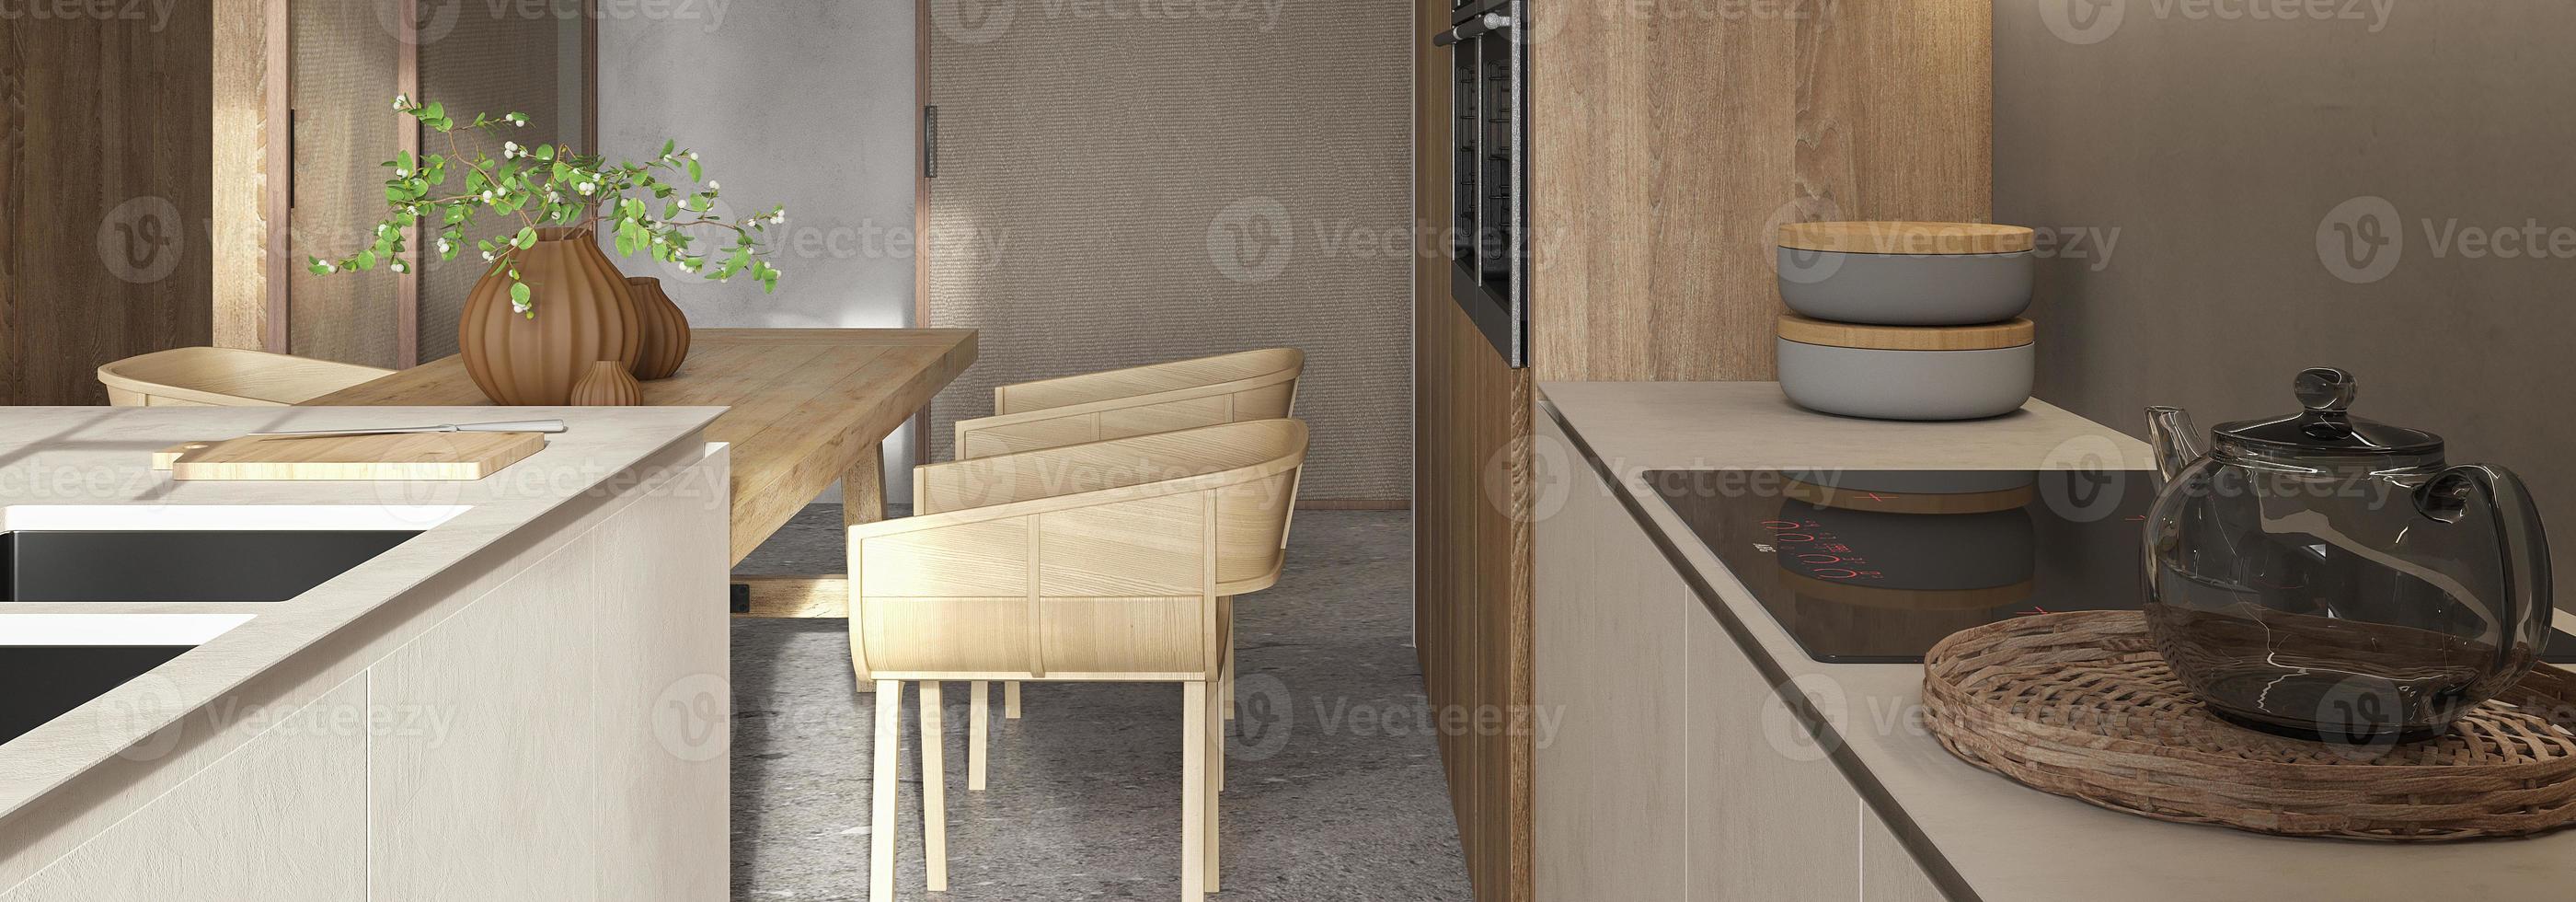 minimales modernes skandinavisches innendesign. Küche und Esszimmer. tisch mit geschirr und grünen pflanzen. 3D-Darstellung. Web-Banner. foto